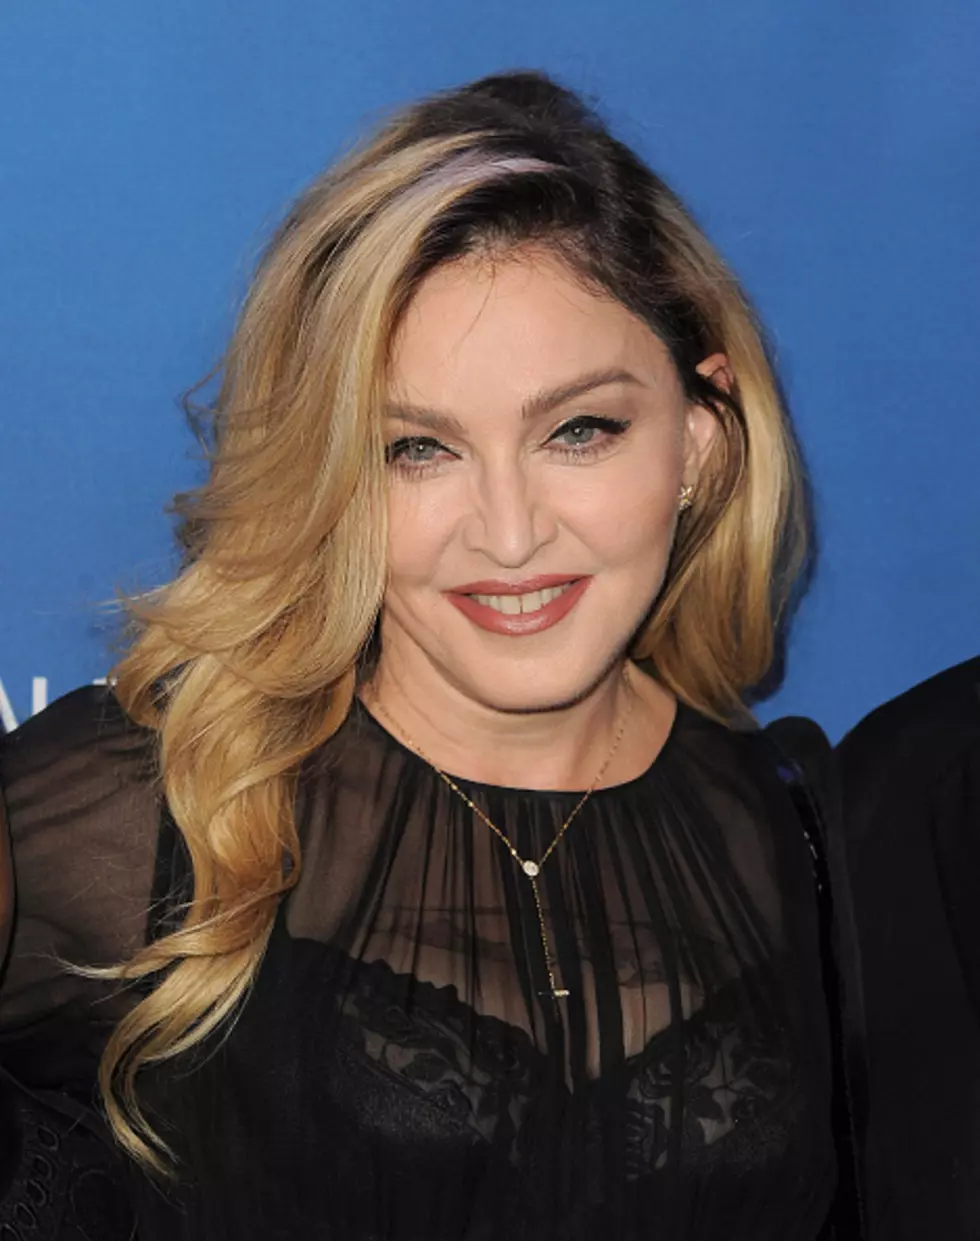 Madonna Drunk On Stage IN Louisville? [VIDEO]